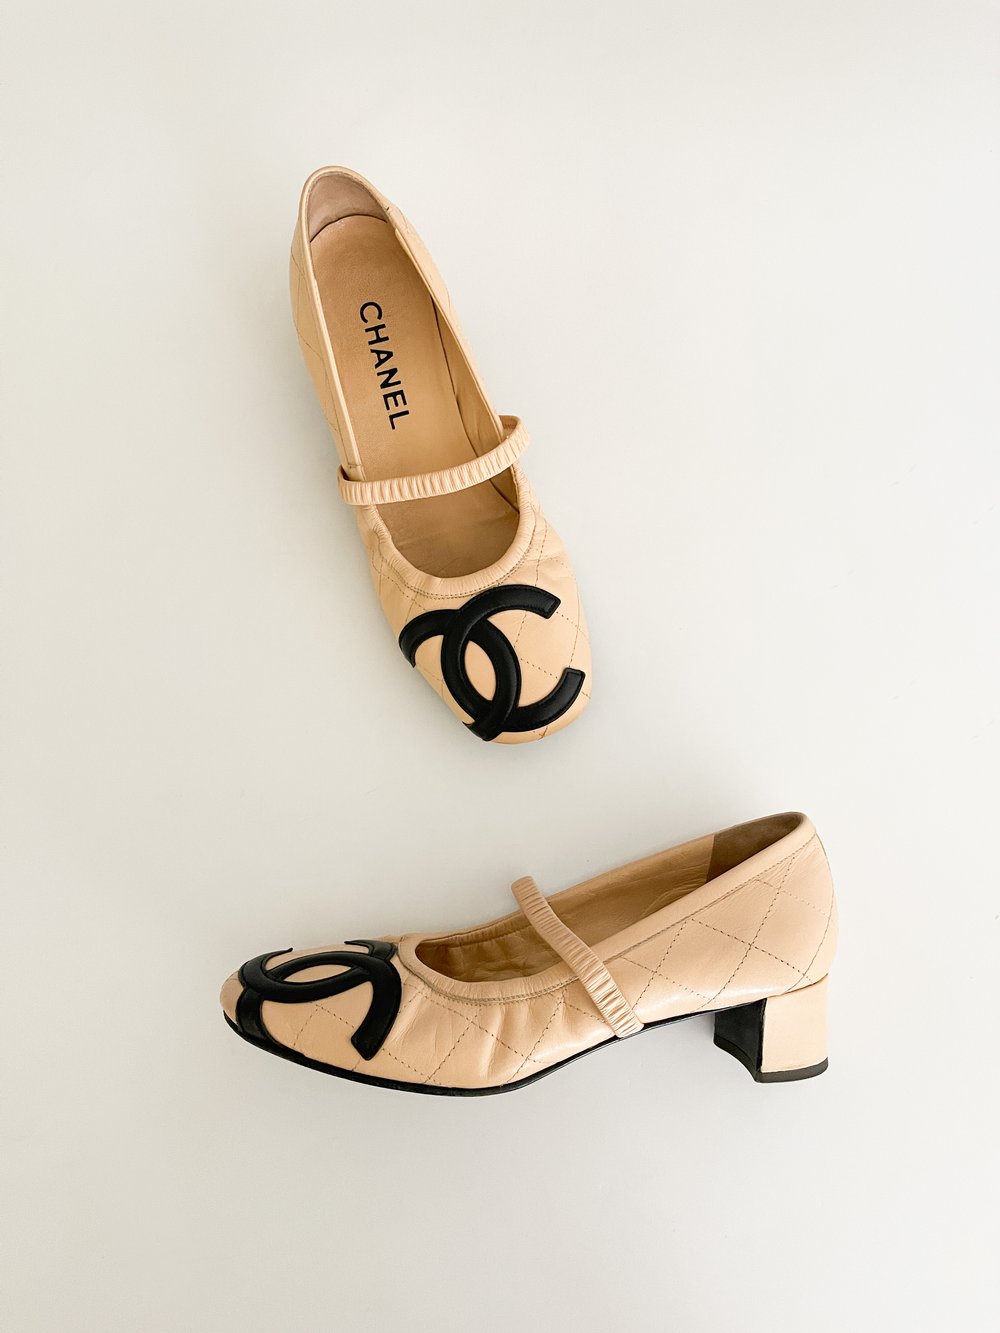 Chanel Ballet Shoes Beige/ Black Leather Cap-Toe Pumps Heels Size 39